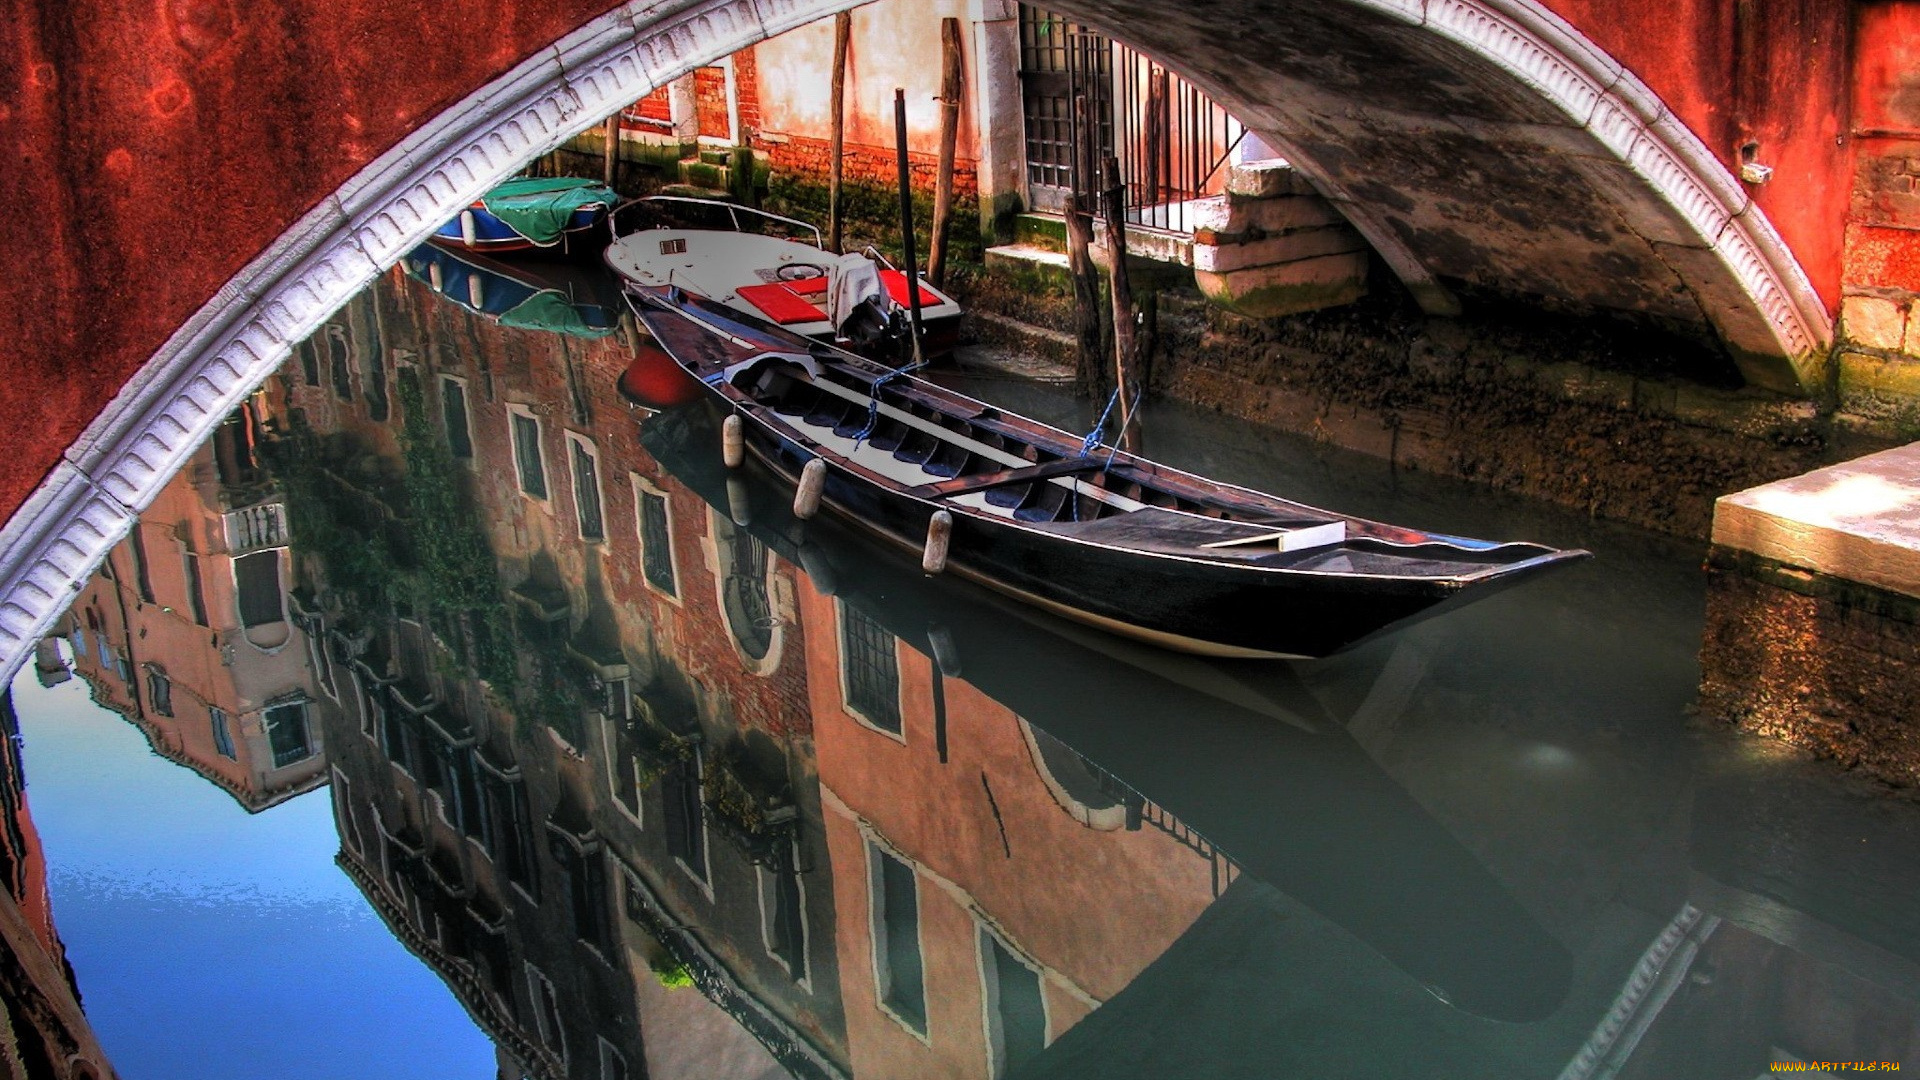 города, венеция, , италия, город, отражение, вода, гондолы, лодки, здания, дома, река, мост, арка